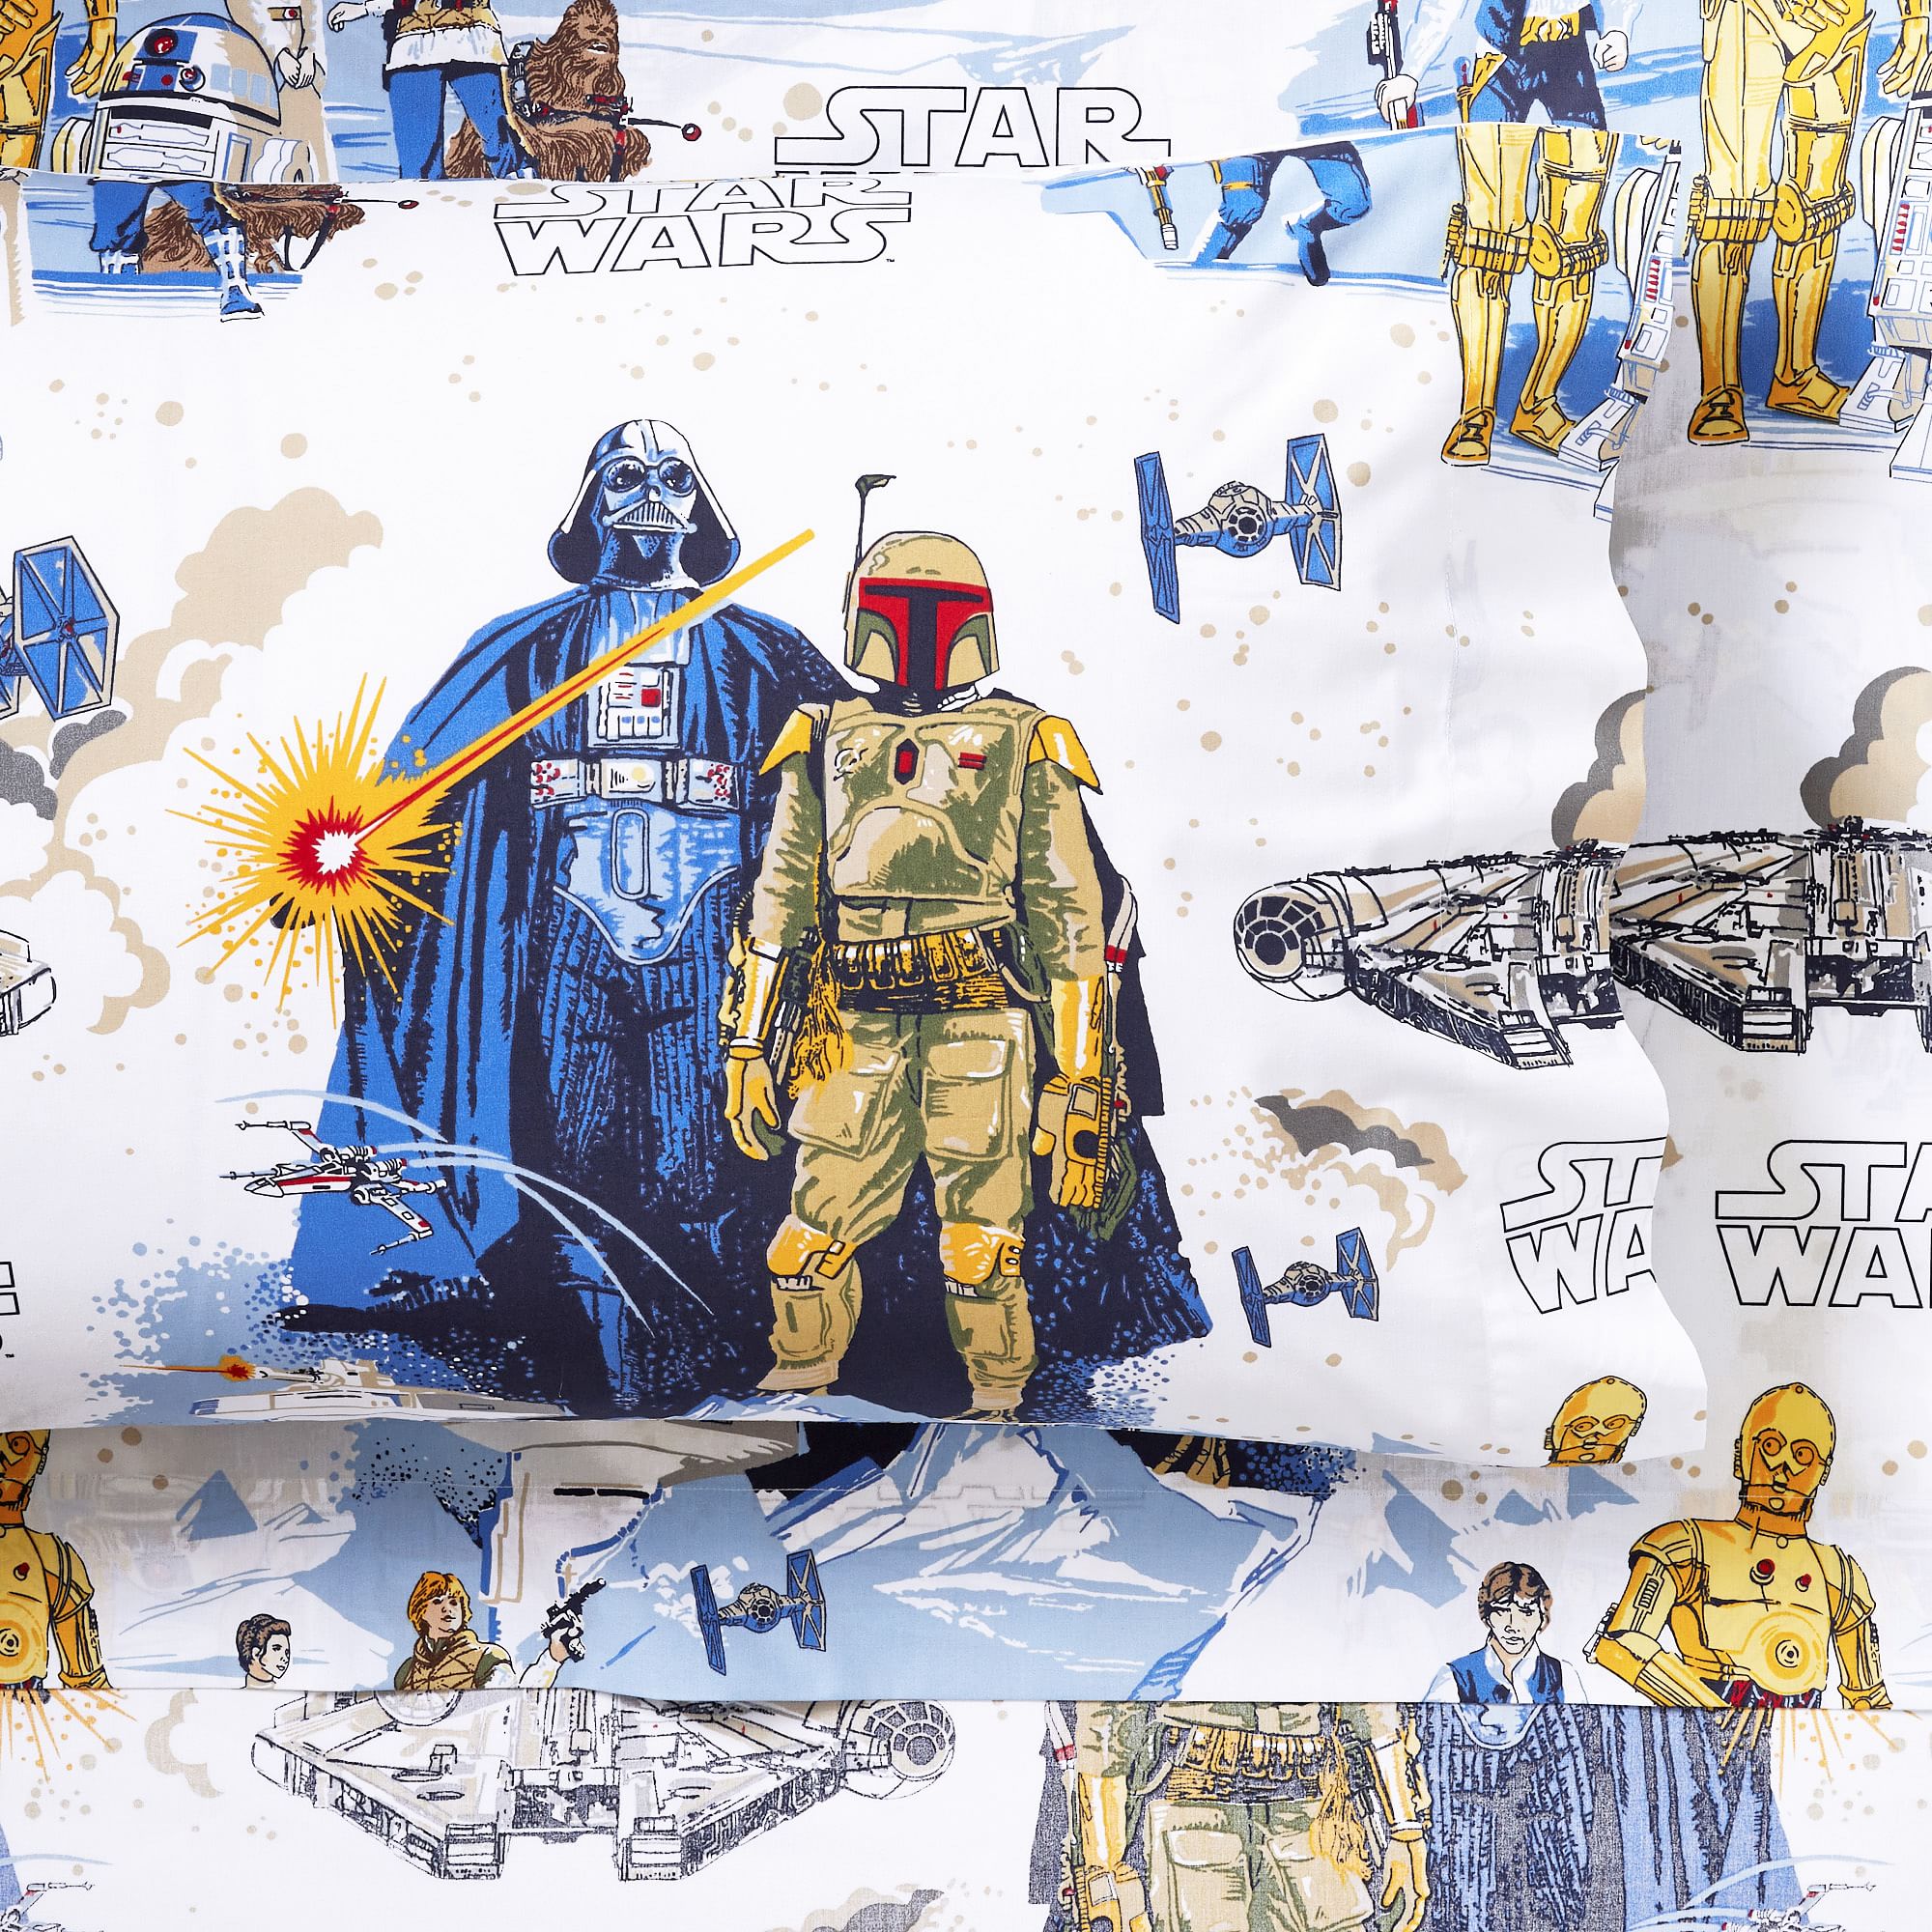 The Empire Strikes Back Sheet Set - Boba Fett Collectibles - Boba